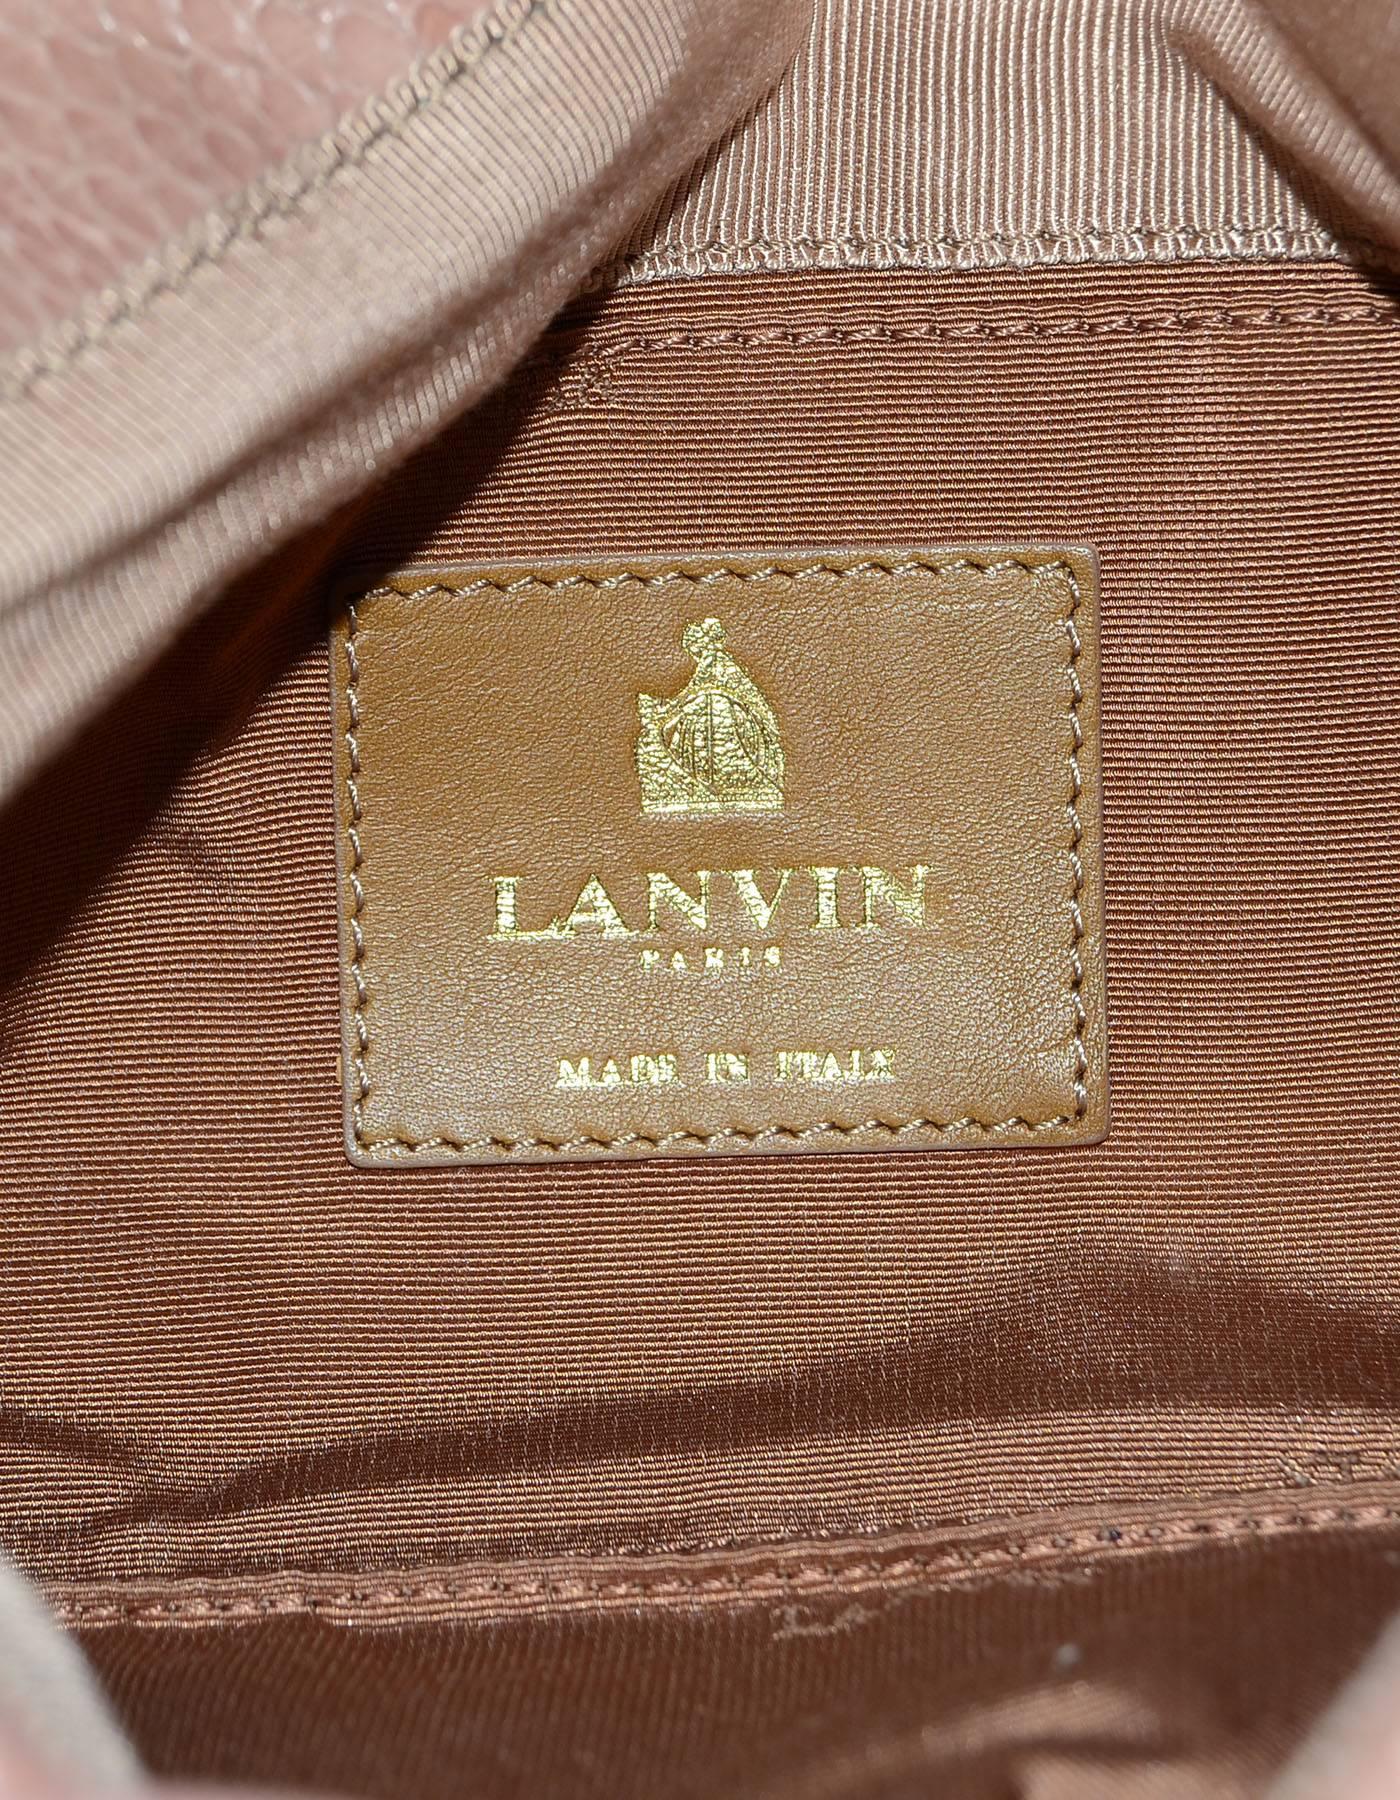  Lanvin Blush Python Clutch/Crossbody Bag w. Crystal Embellishment 2